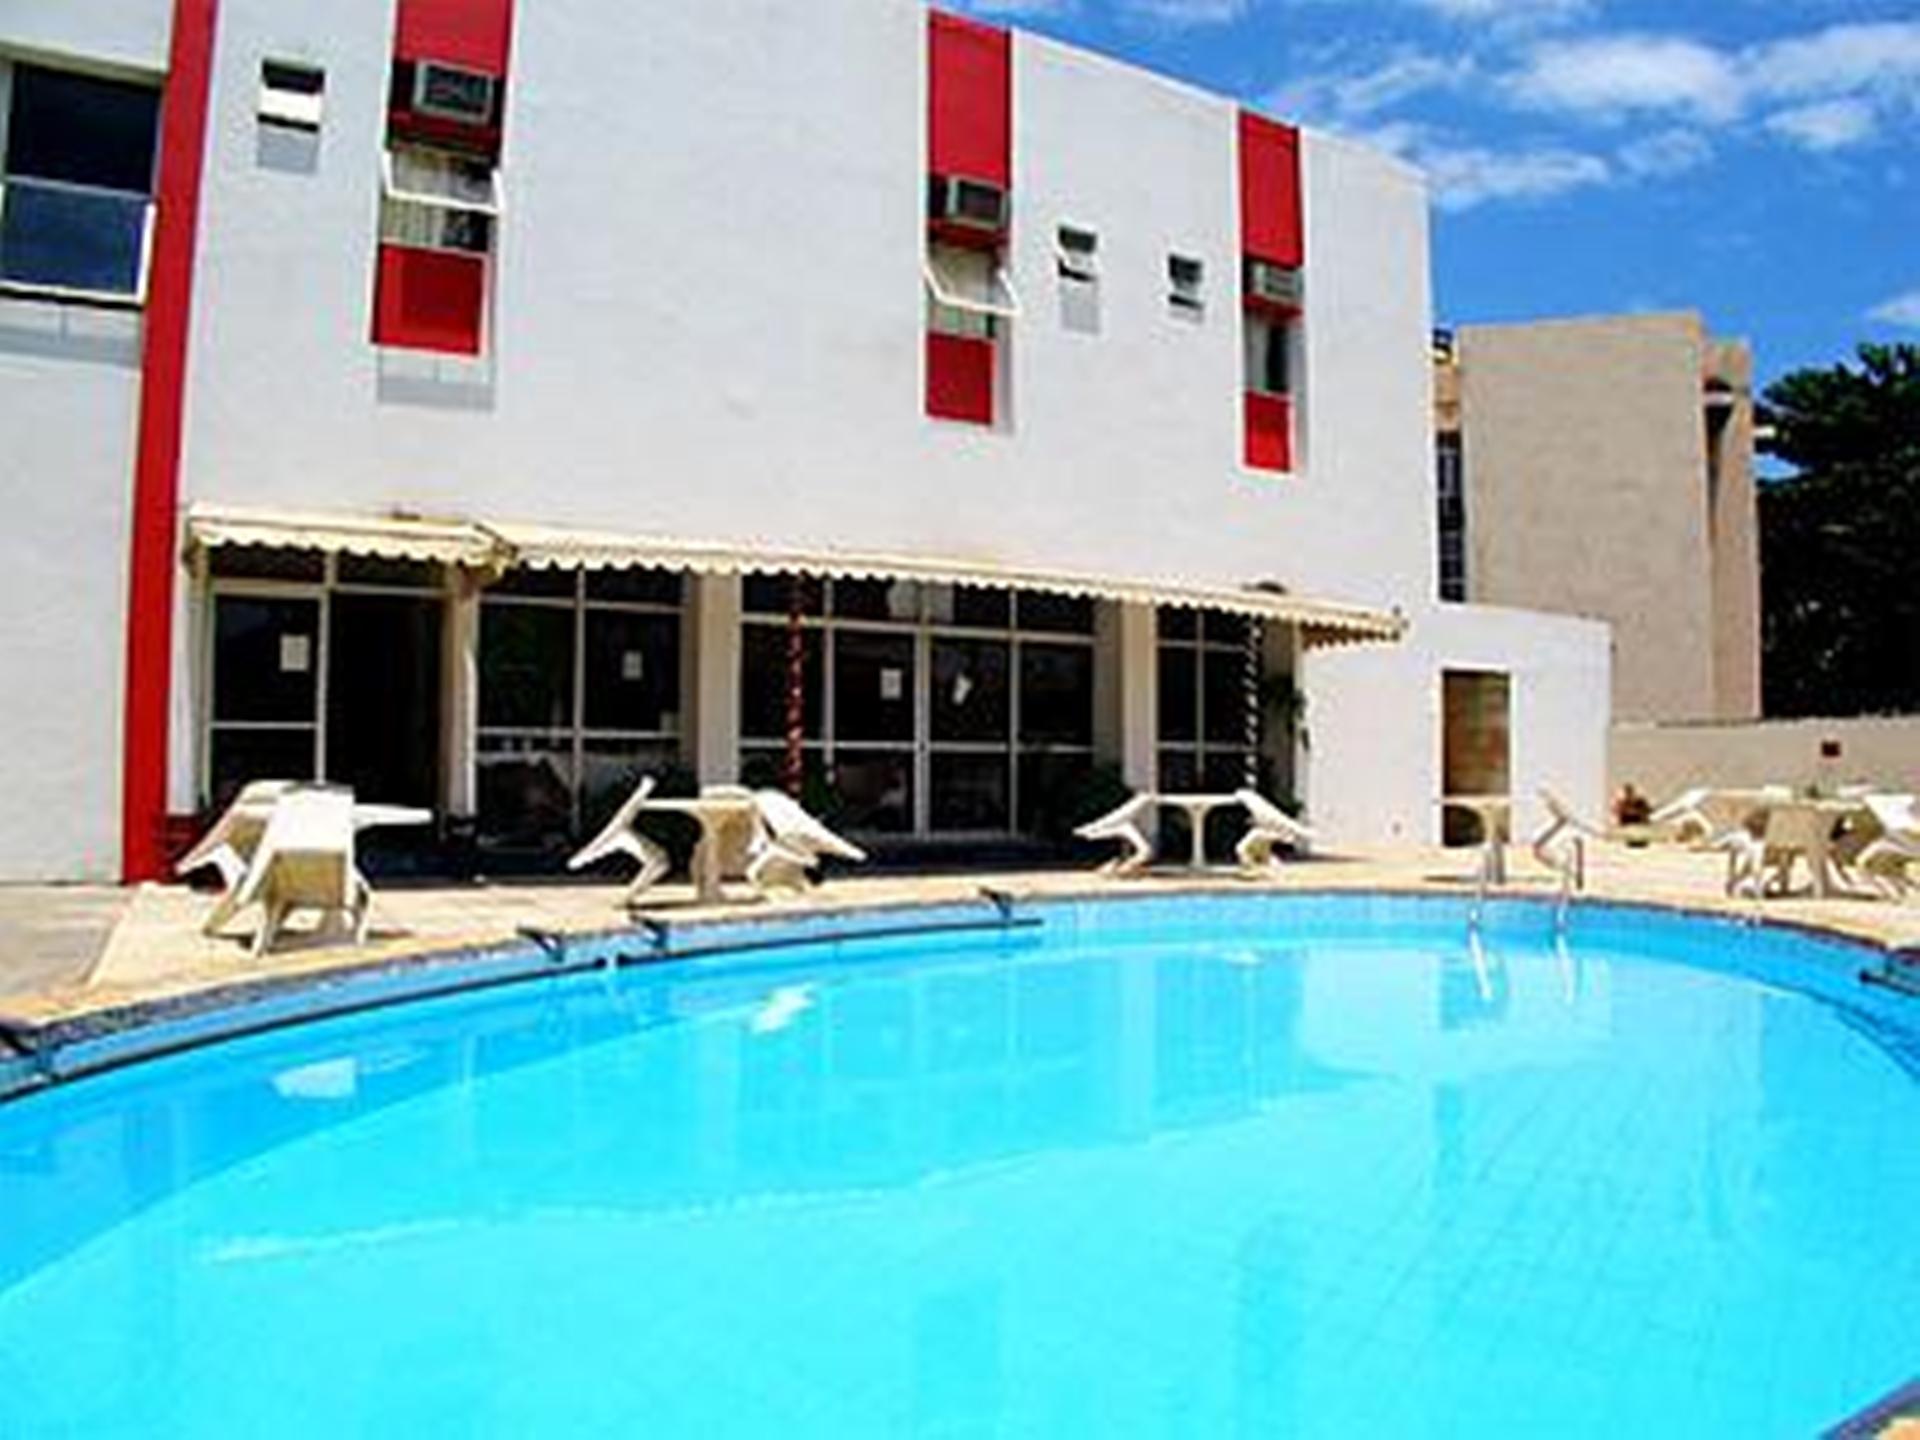 Pool view Hotel Itapoan Praia